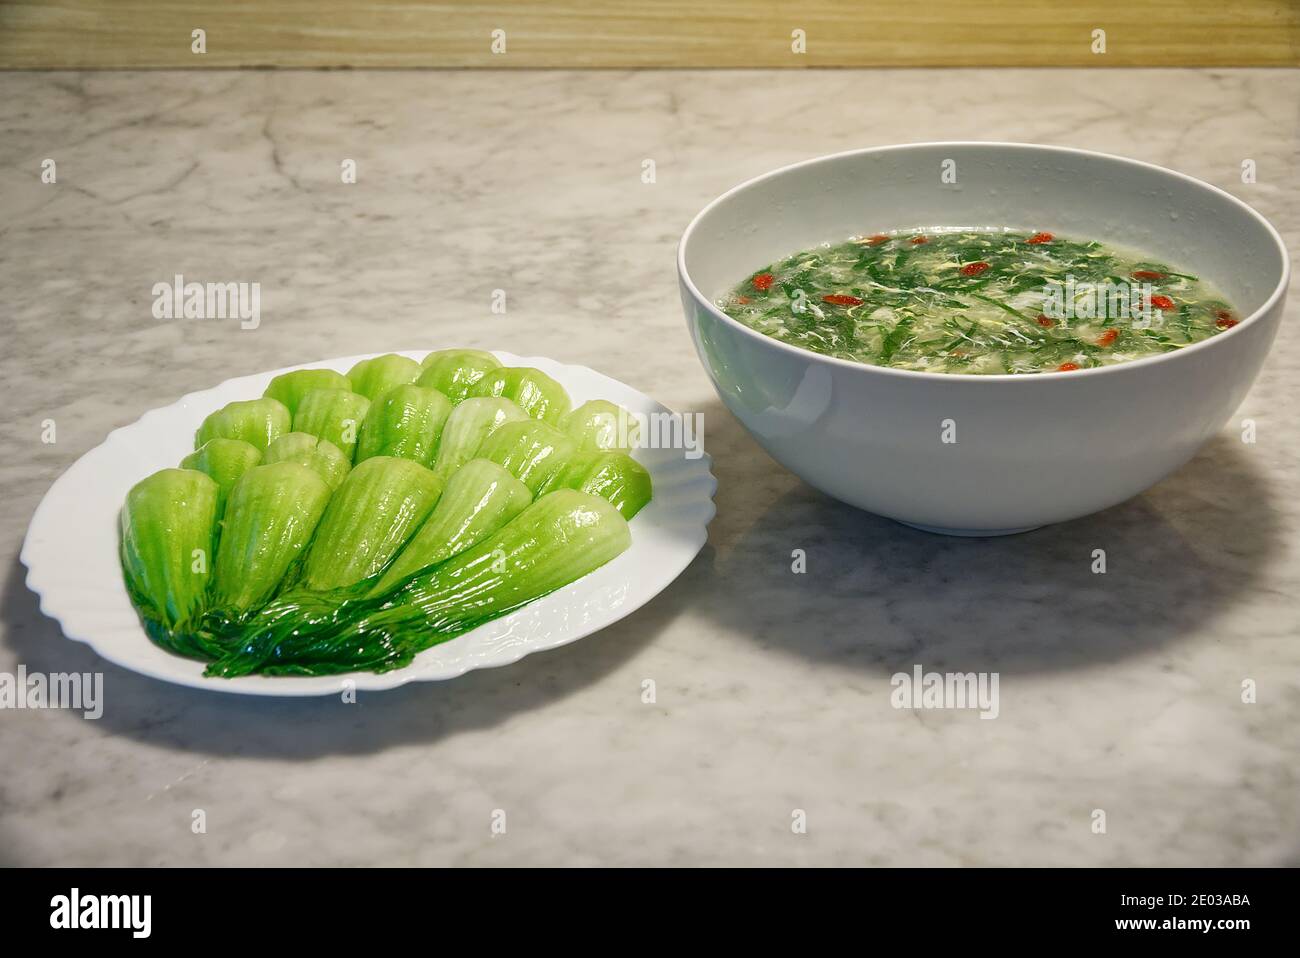 Bok choy bio sauté sur la table, soupe de légumes avec baies de carcajou, végétarien, alimentation saine Banque D'Images